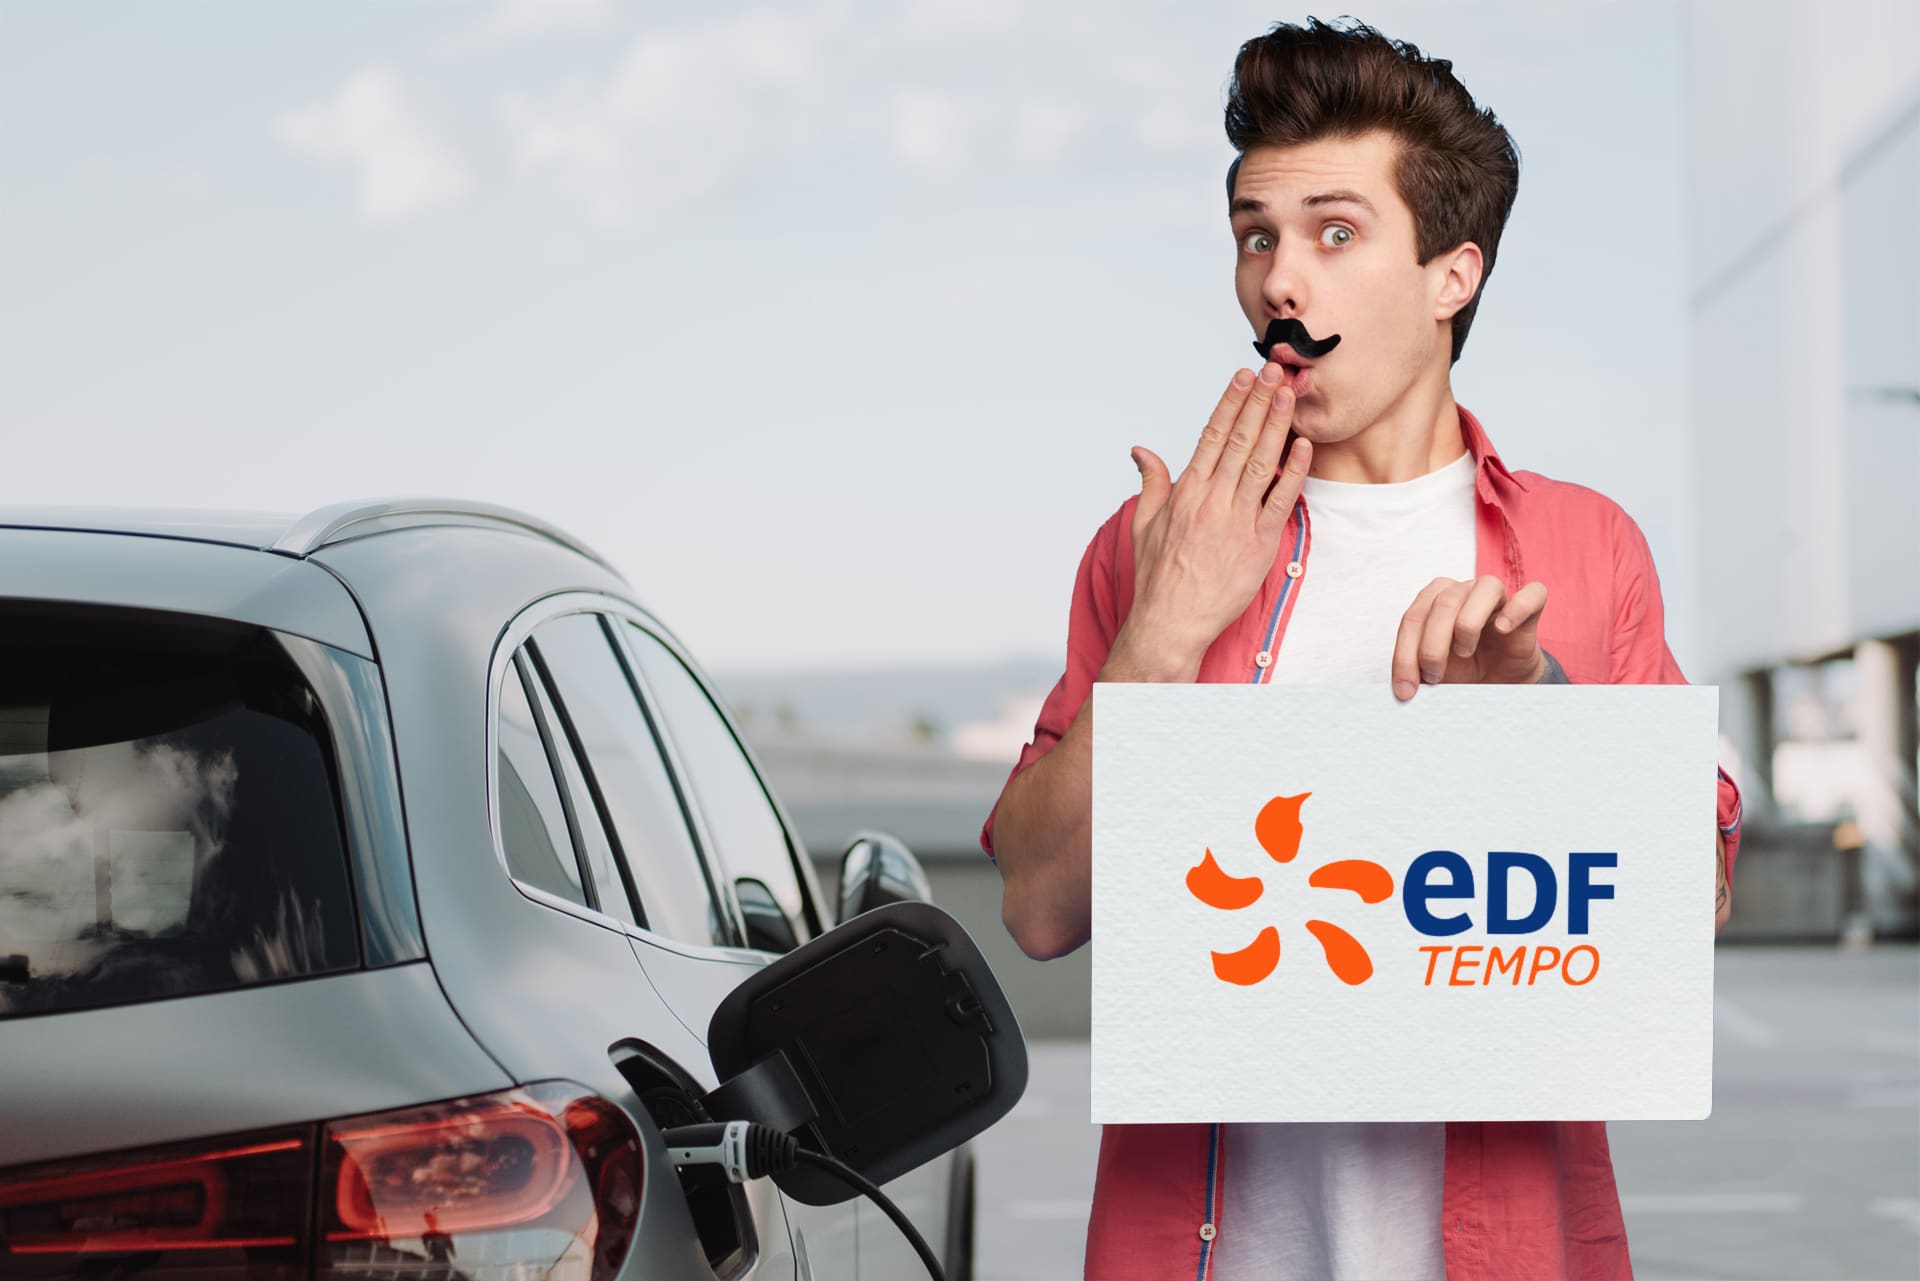 Cet abonnement EDF méconnu permet d’économiser des centaines d’euros sur la recharge d’une voiture électrique